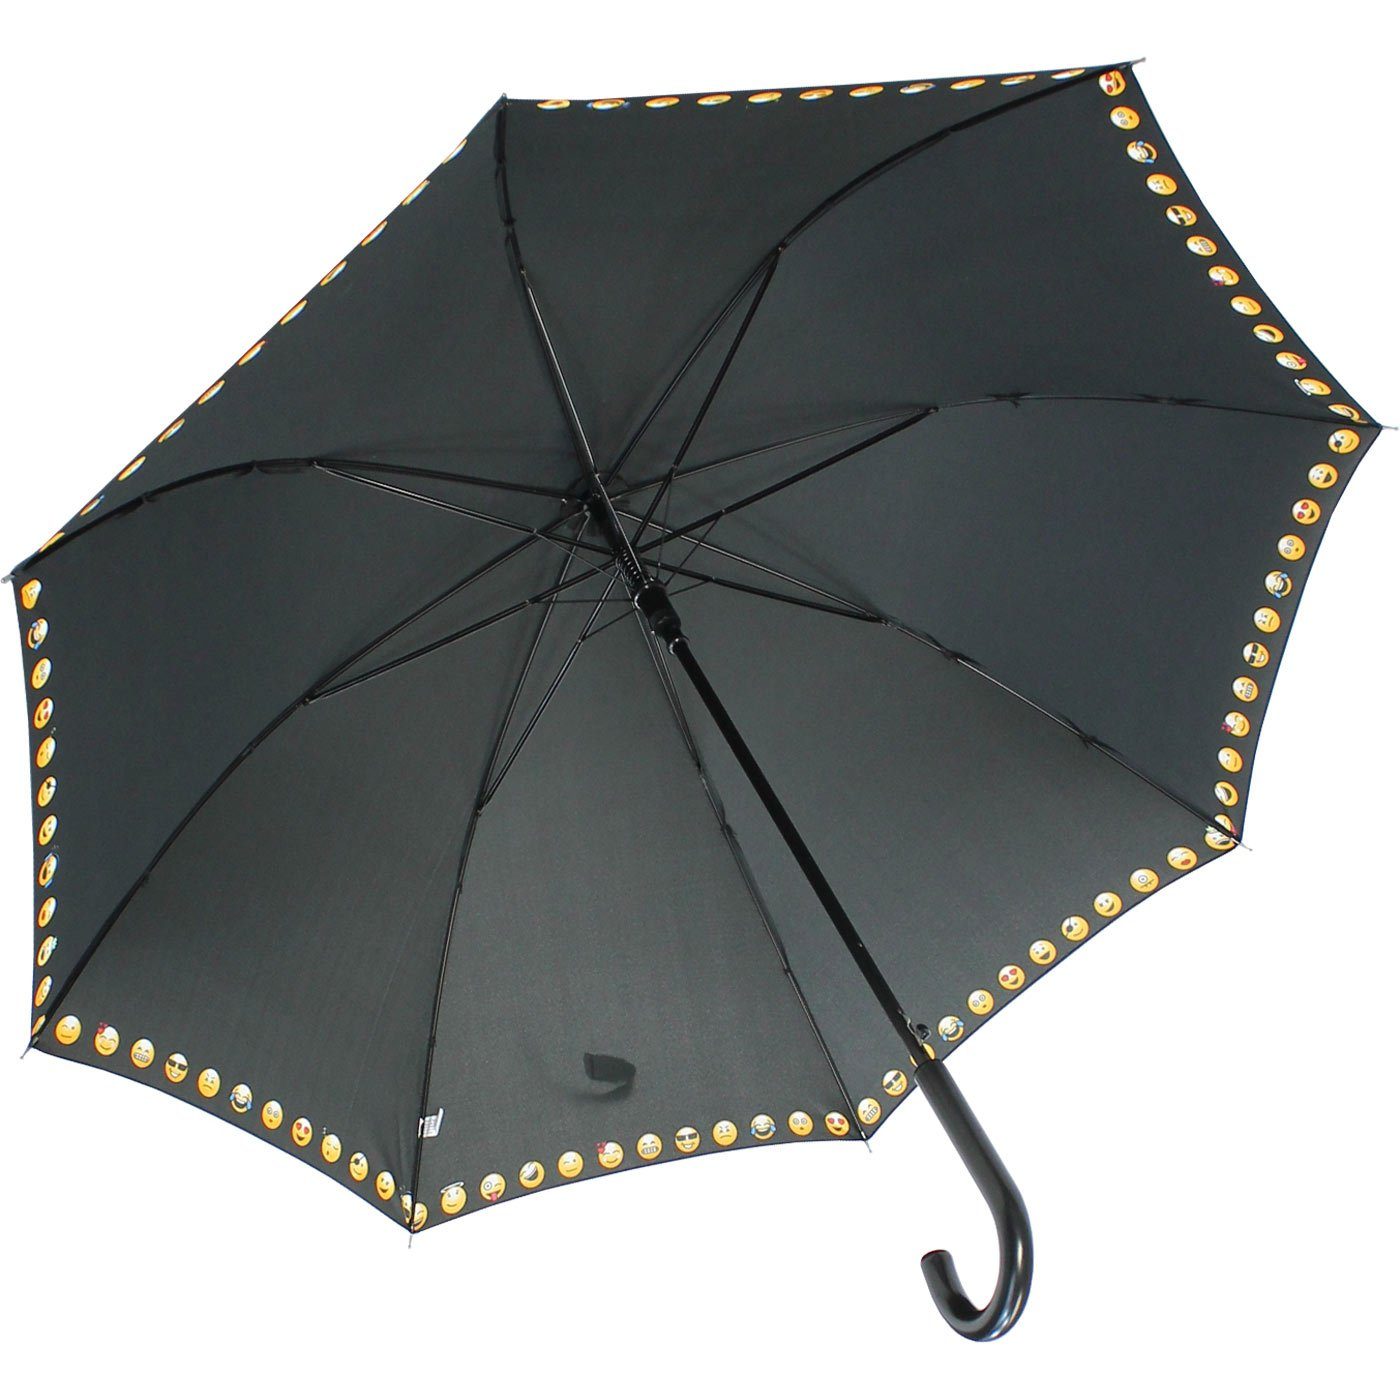 HAPPY RAIN Langregenschirm großer Damen, mit Borte lustigen mit Smileys bedruckt Auf-Automatik für Regenschirm - schwarz